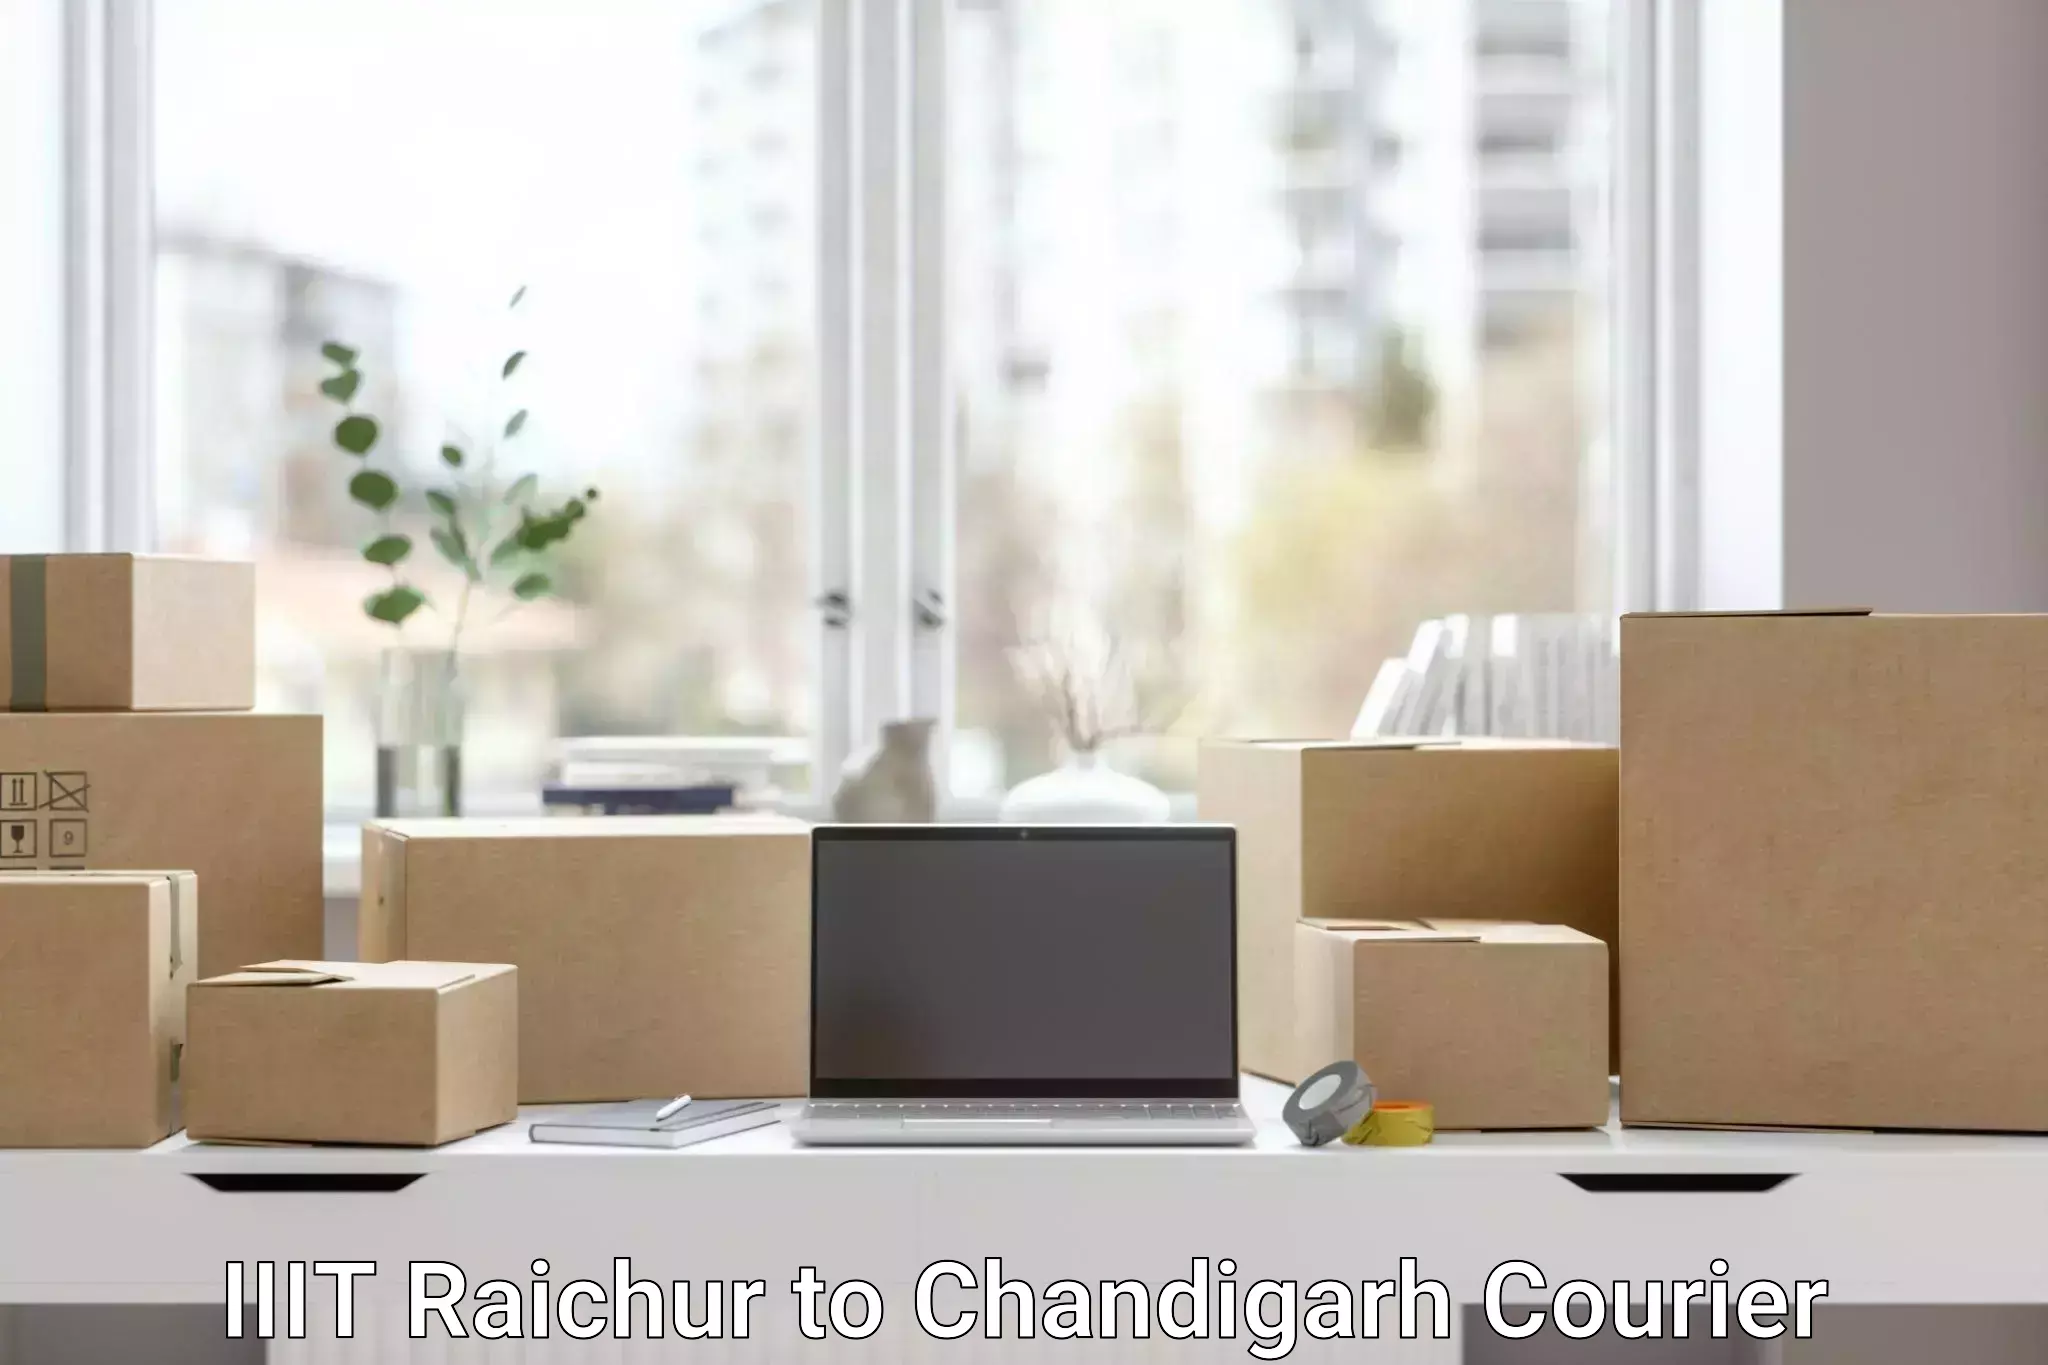 Special handling courier IIIT Raichur to Chandigarh